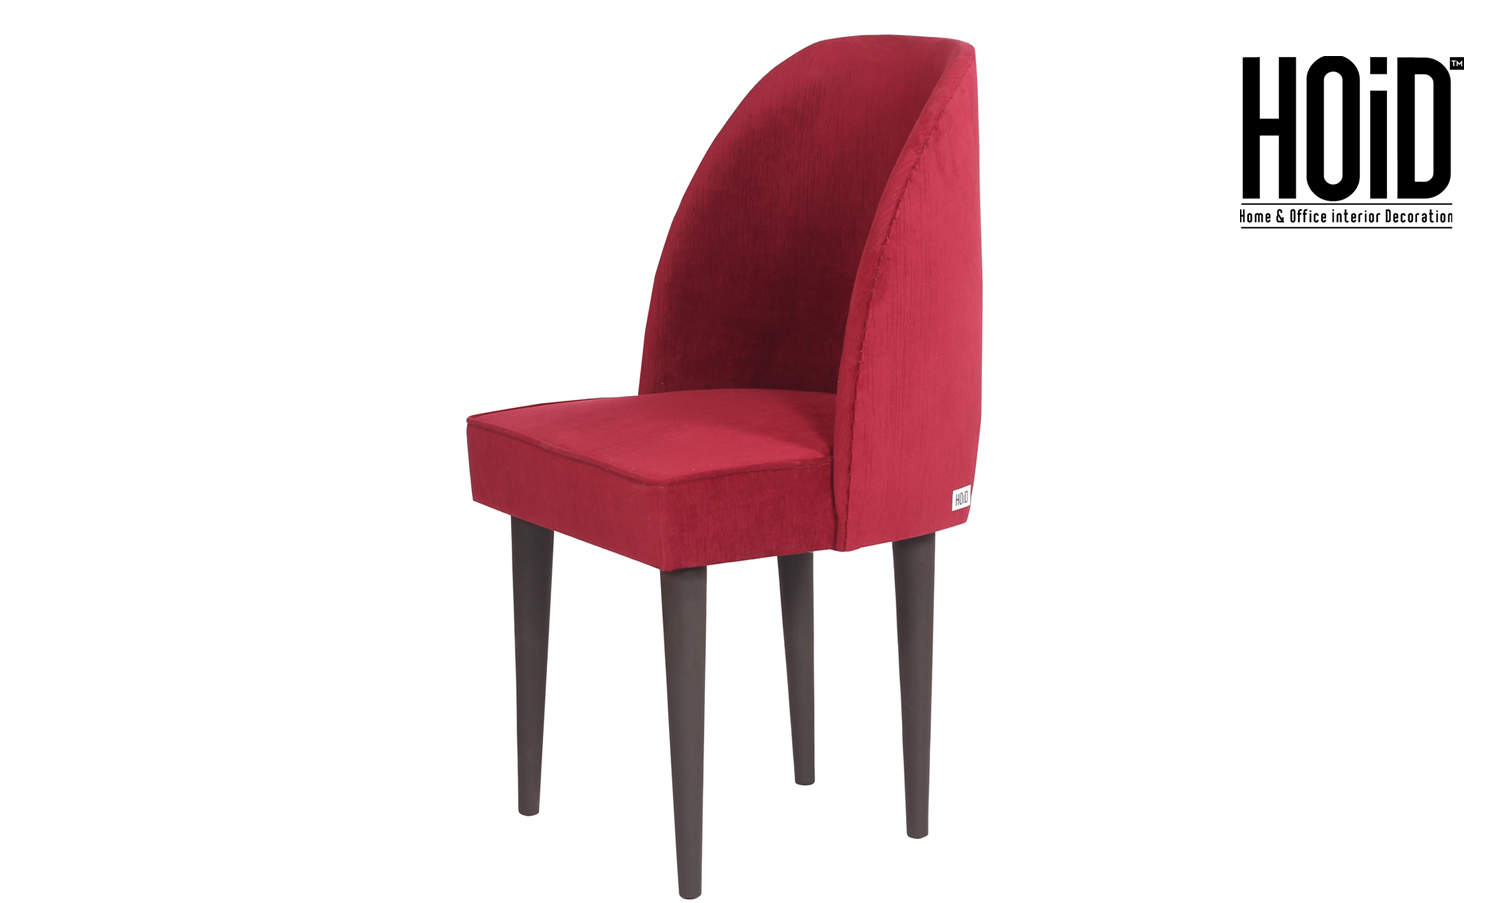 soon-chair-in-red-01-1.jpg